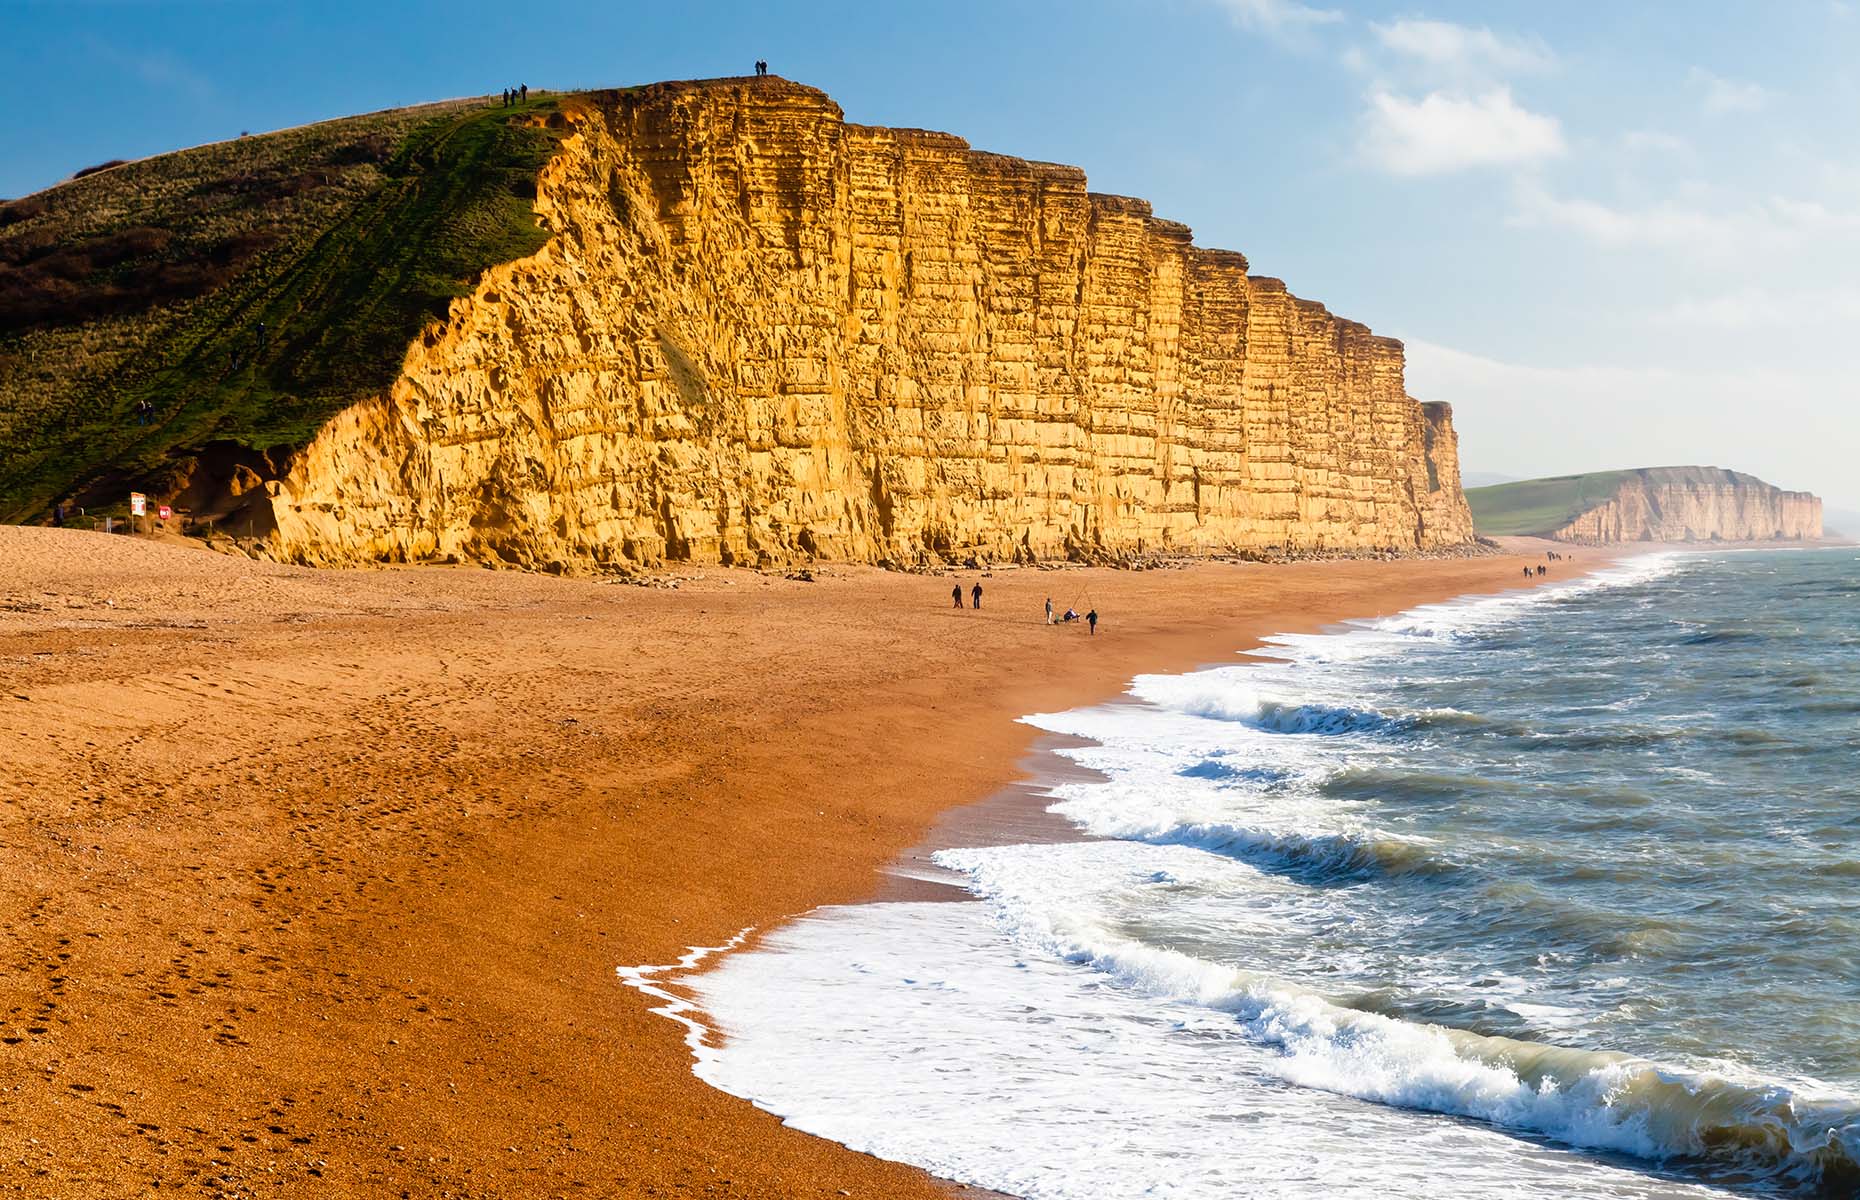 West Bay in Dorset (Image: ian woolcock/Shutterstock)